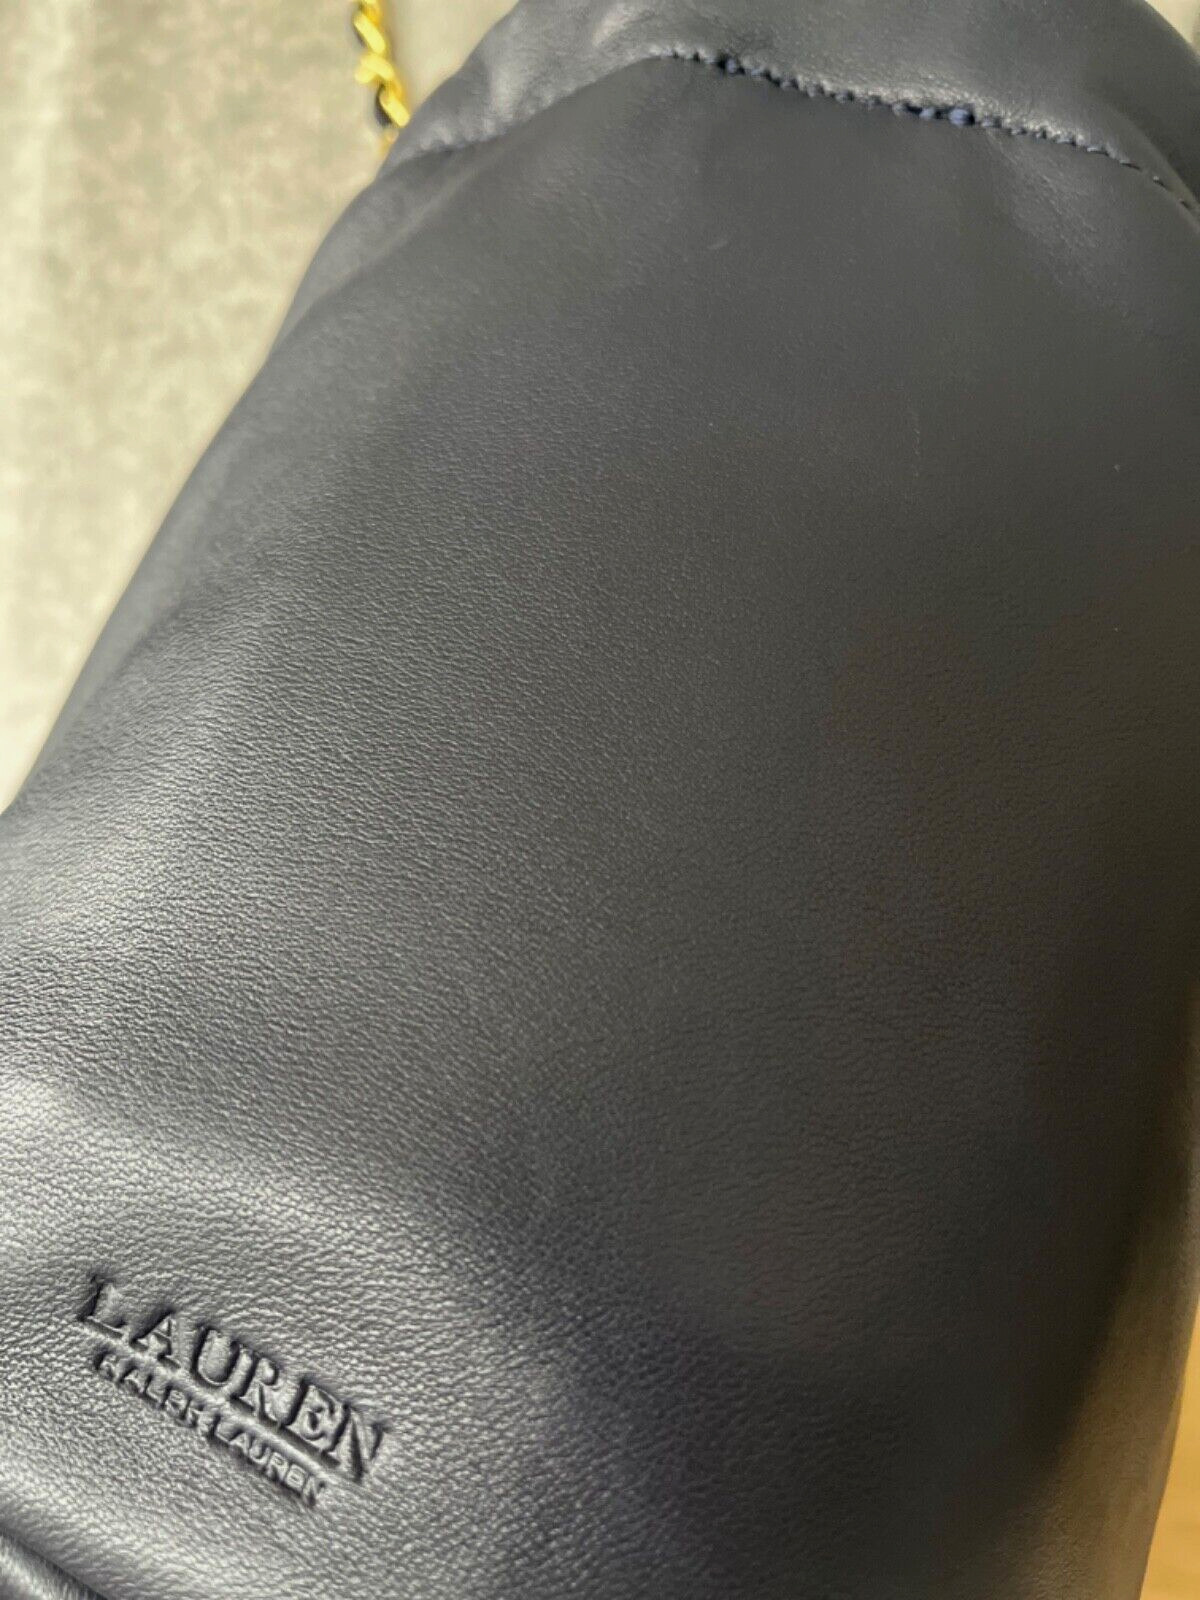 NEU Ralph Lauren Reg329,- Ledertasche Leder Tasche Beuteltasche Cross Body Bag